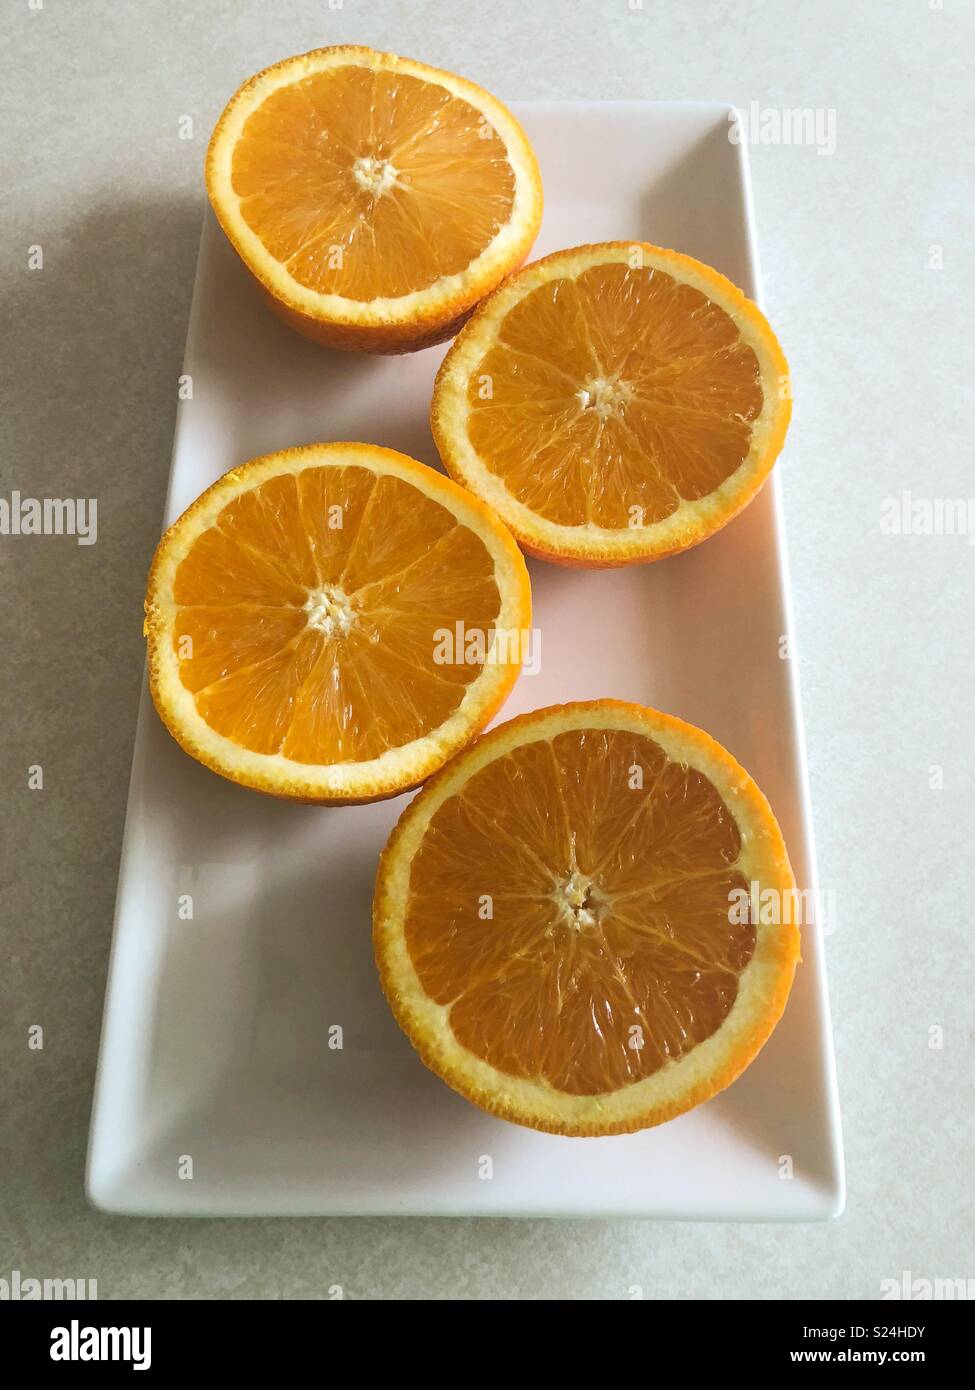 Orange slices on white tray Stock Photo